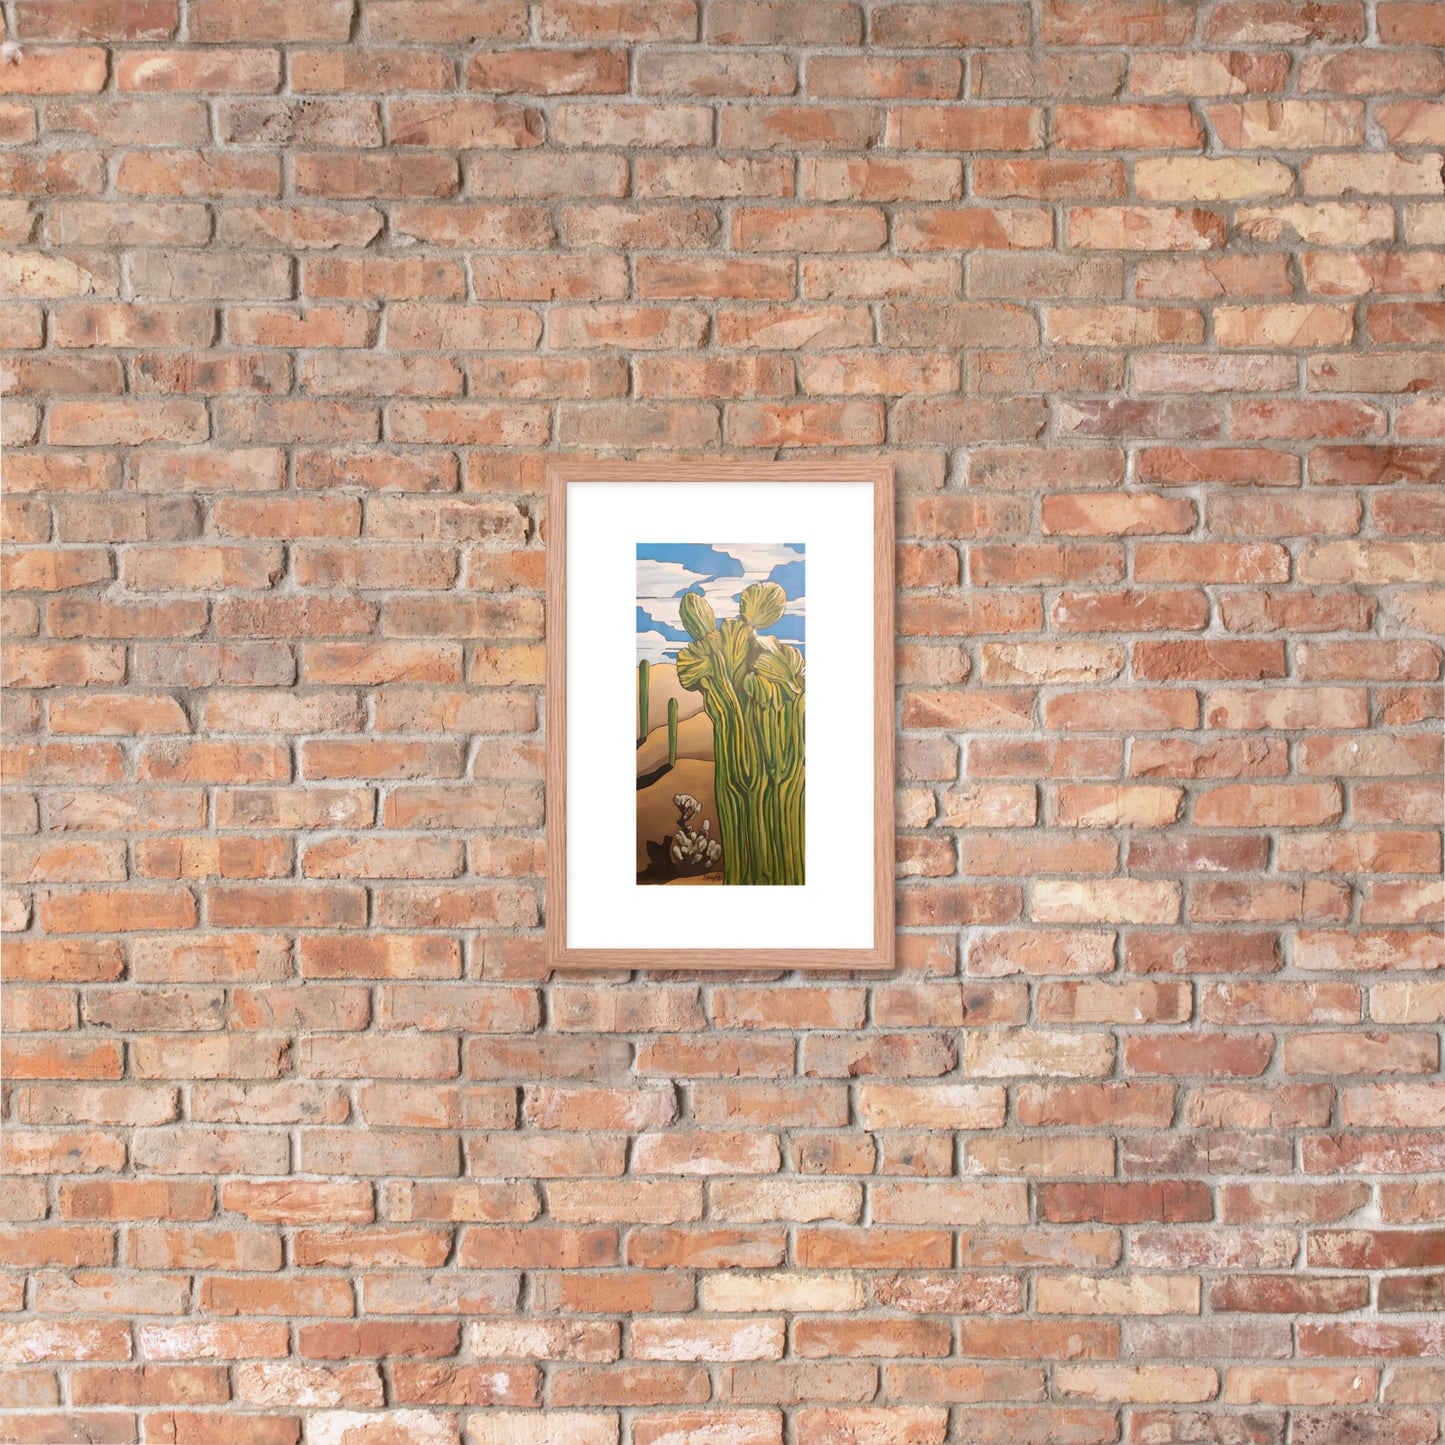 Crested Saguaro Cactus Framed poster